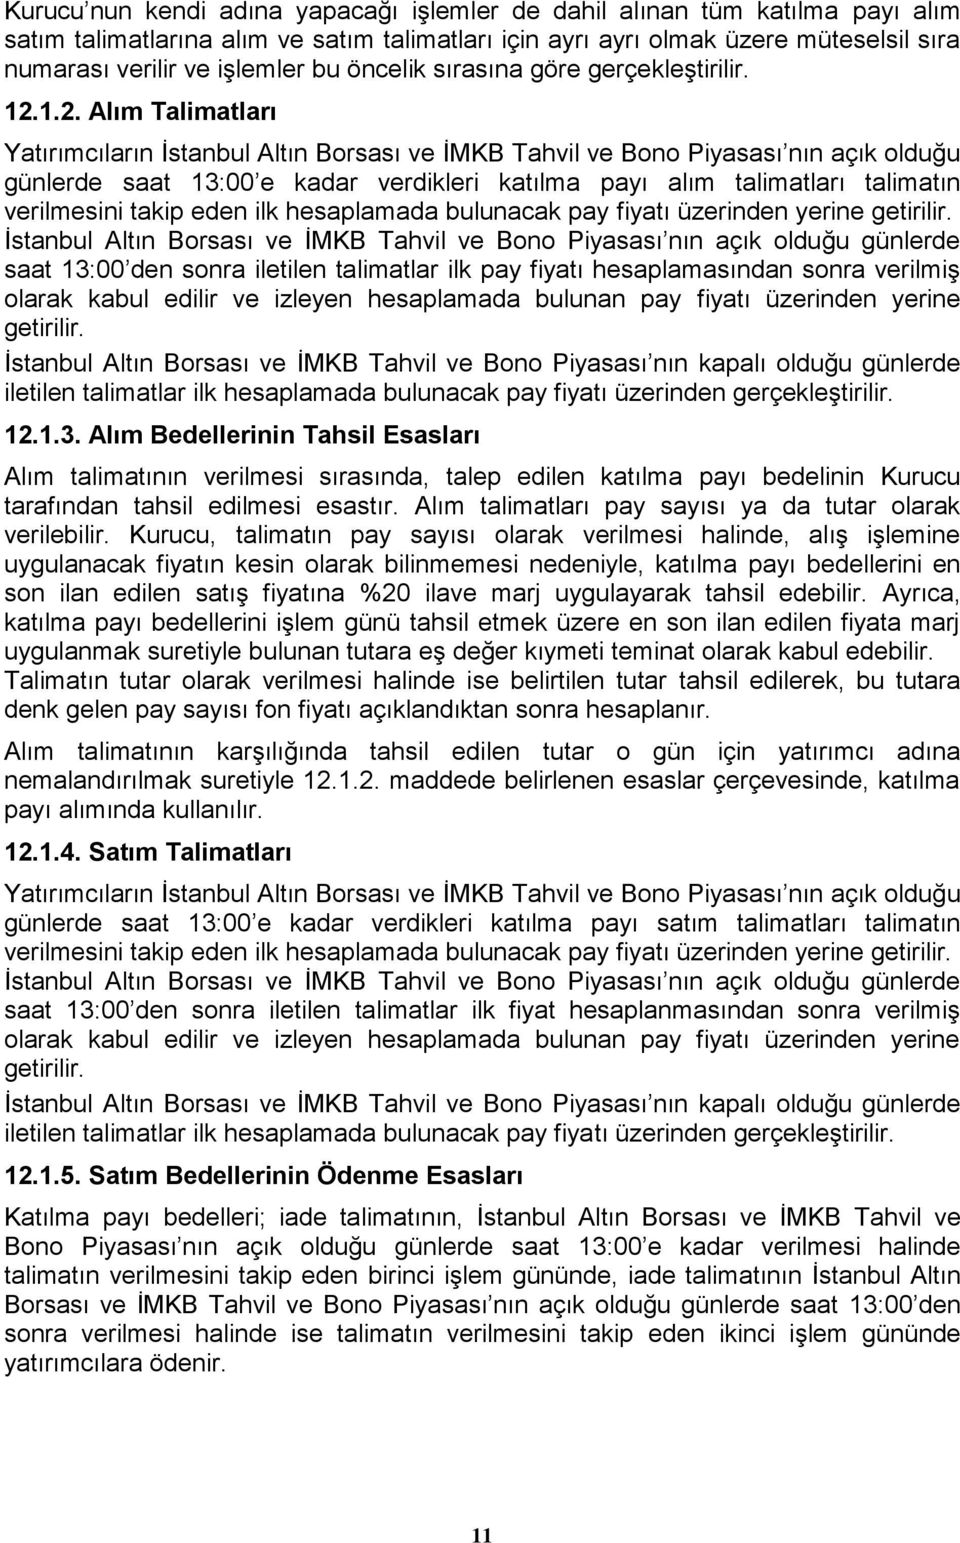 1.2. Alım Talimatları Yatırımcıların İstanbul Altın Borsası ve İMKB Tahvil ve Bono Piyasası nın açık olduğu günlerde saat 13:00 e kadar verdikleri katılma payı alım talimatları talimatın verilmesini